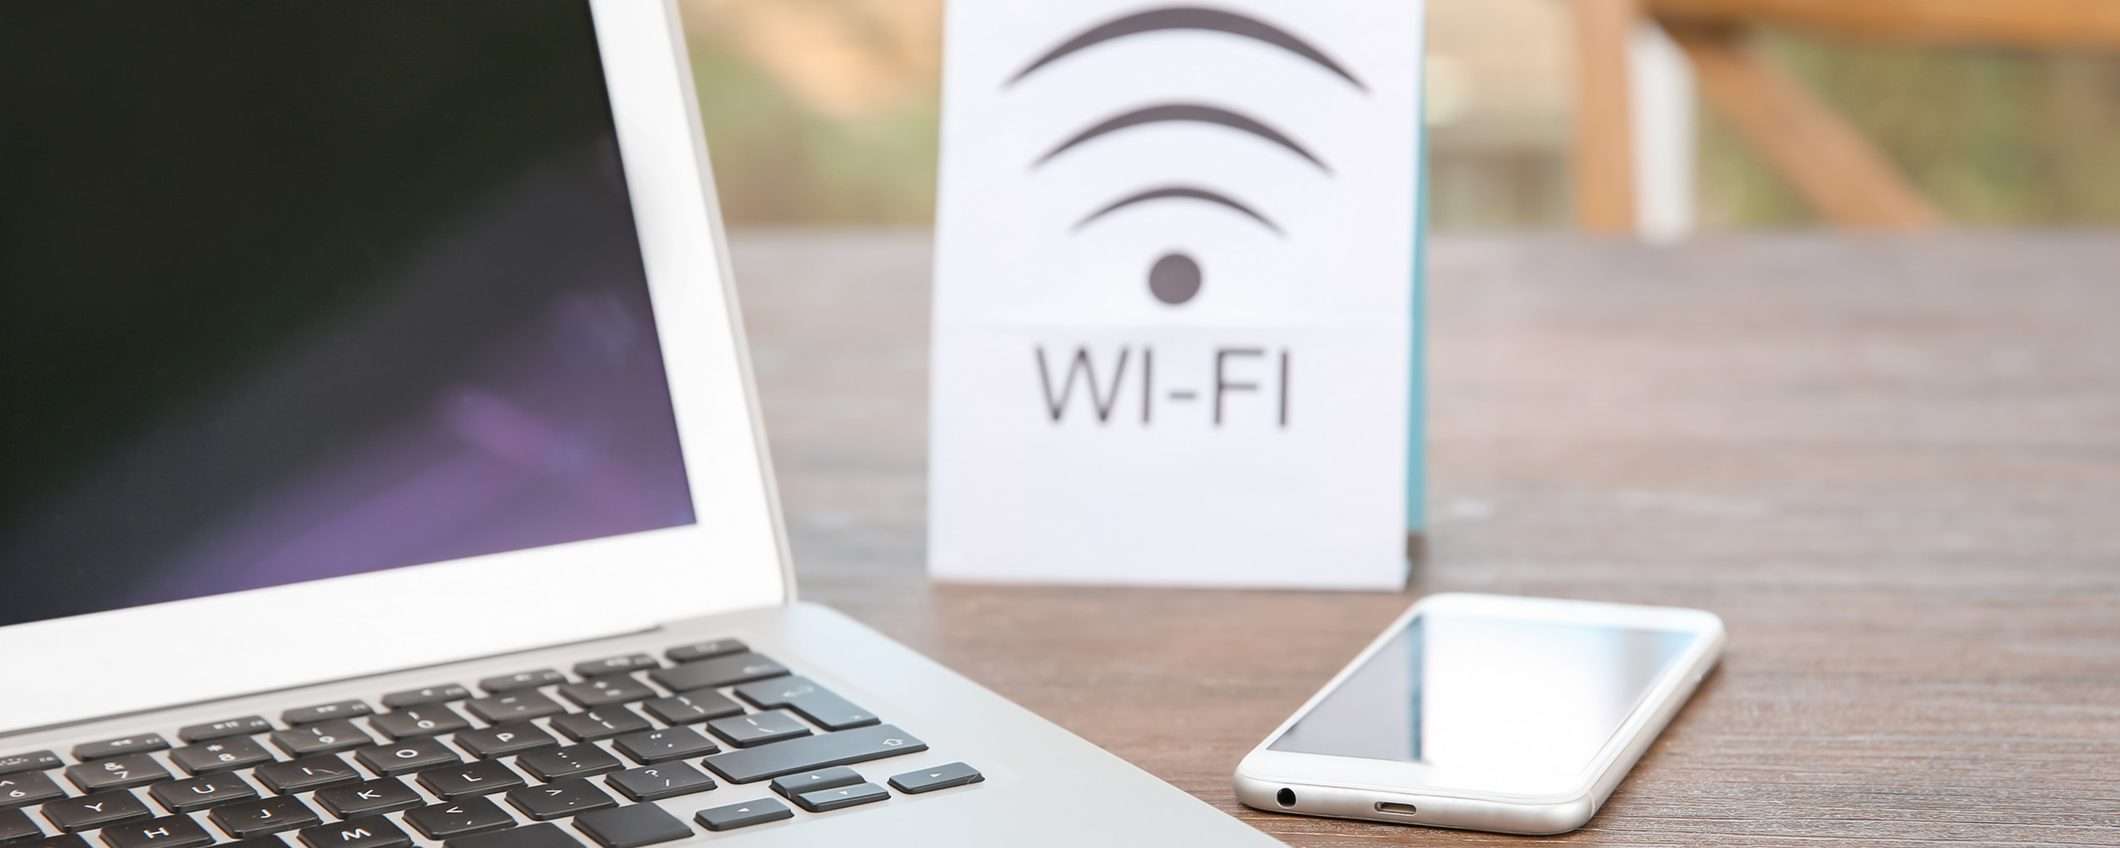 Attenzione al Wi-Fi gratis: 6 consigli per evitare problemi